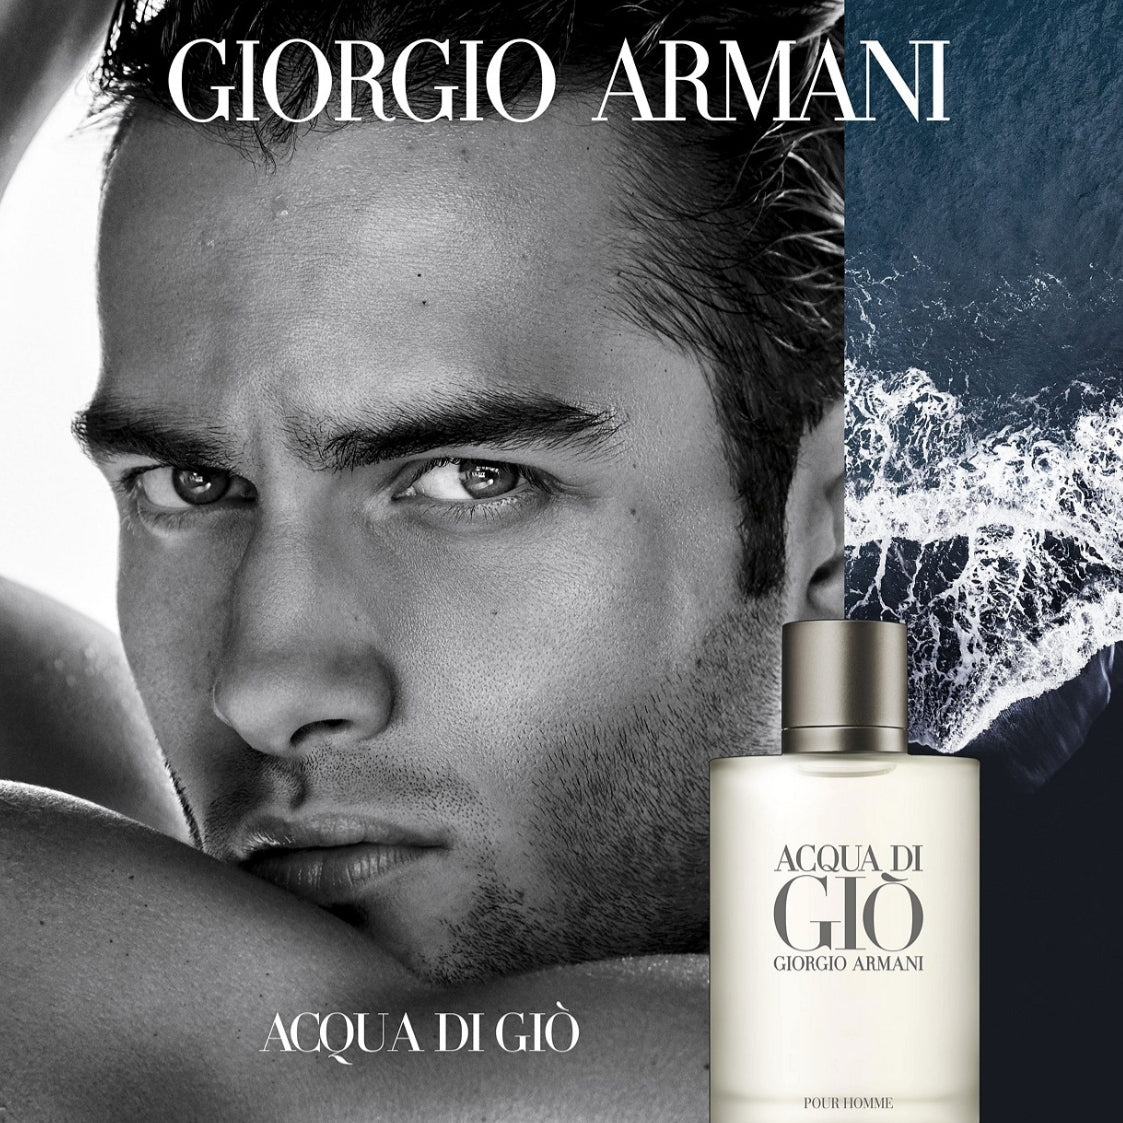 Mens Giorgio Armani Acqua Di Gio Pour Homme Eau De Toilette Fragrance Collection